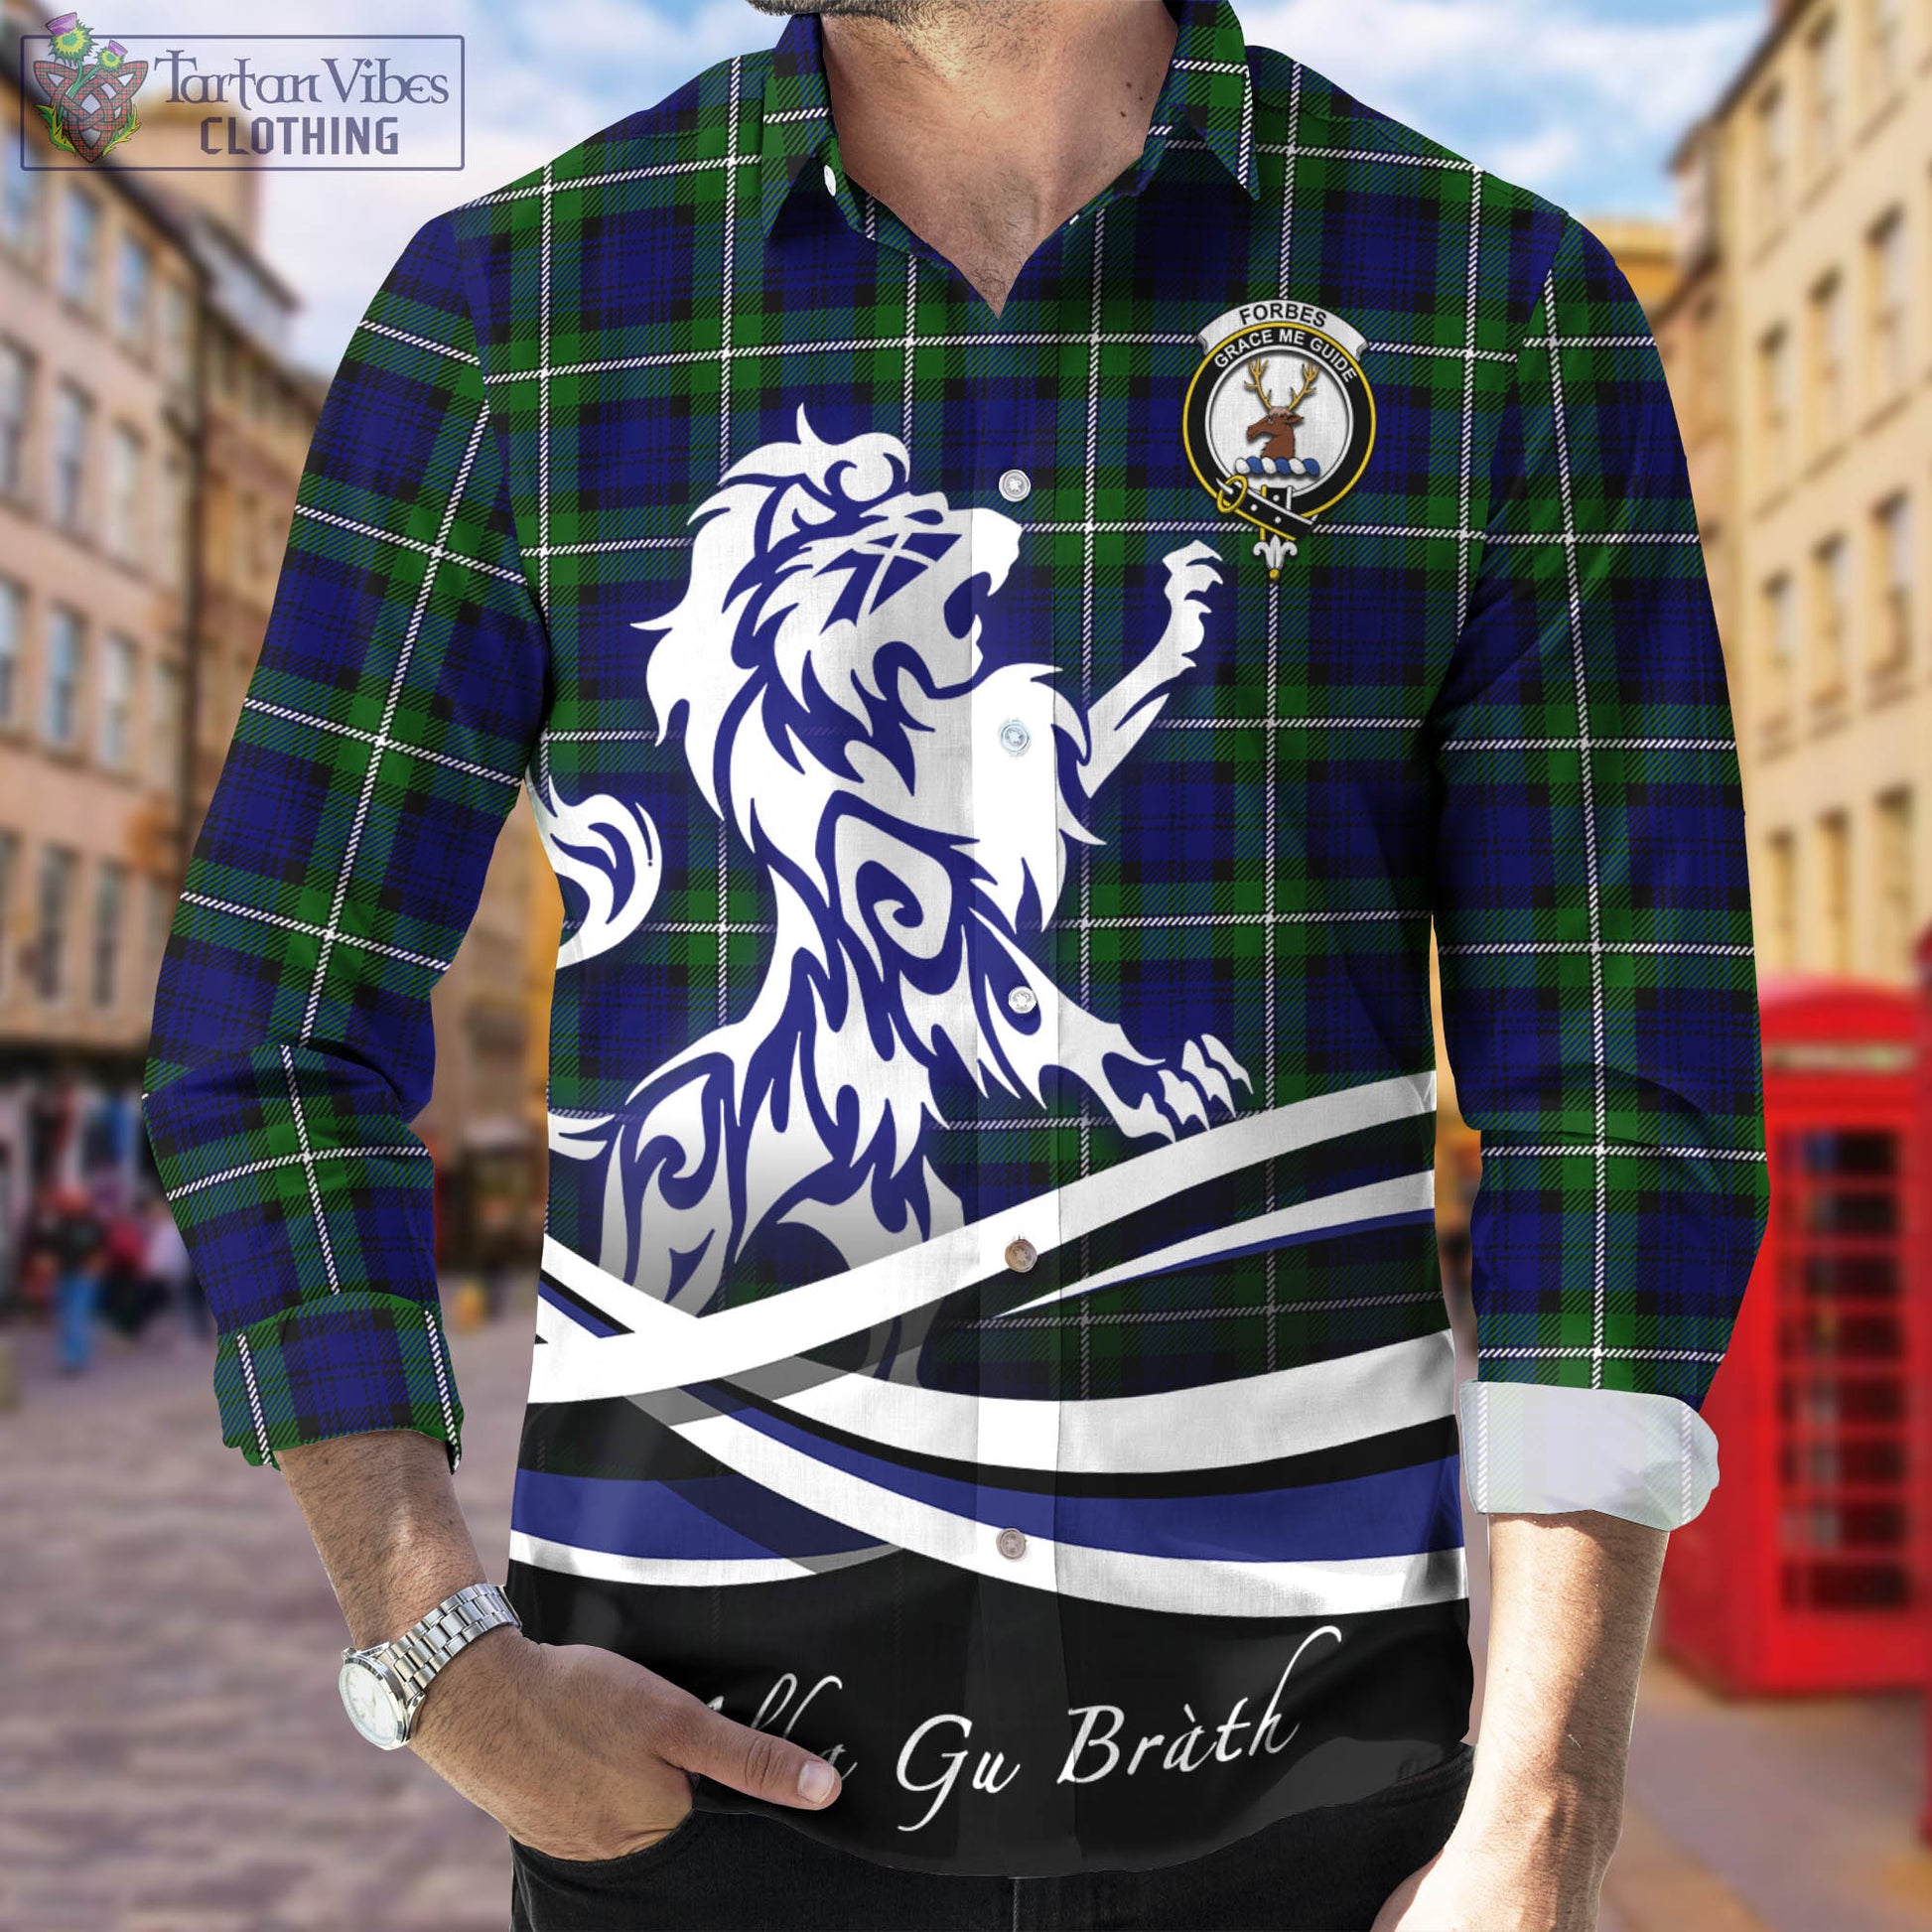 forbes-modern-tartan-long-sleeve-button-up-shirt-with-alba-gu-brath-regal-lion-emblem